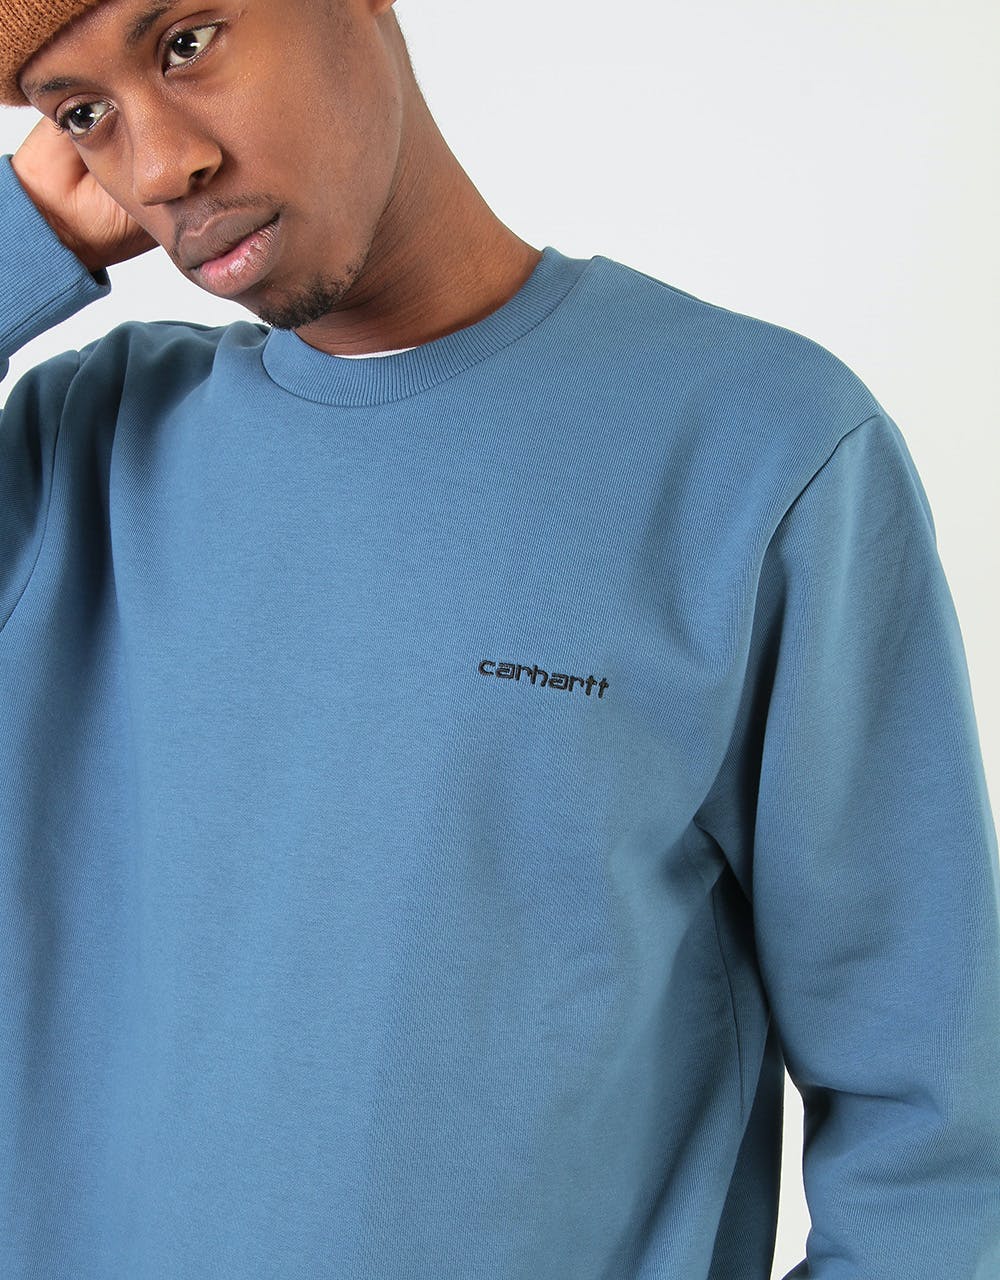 Carhartt WIP Script Embroidery Sweatshirt - Prussian Blue/Black